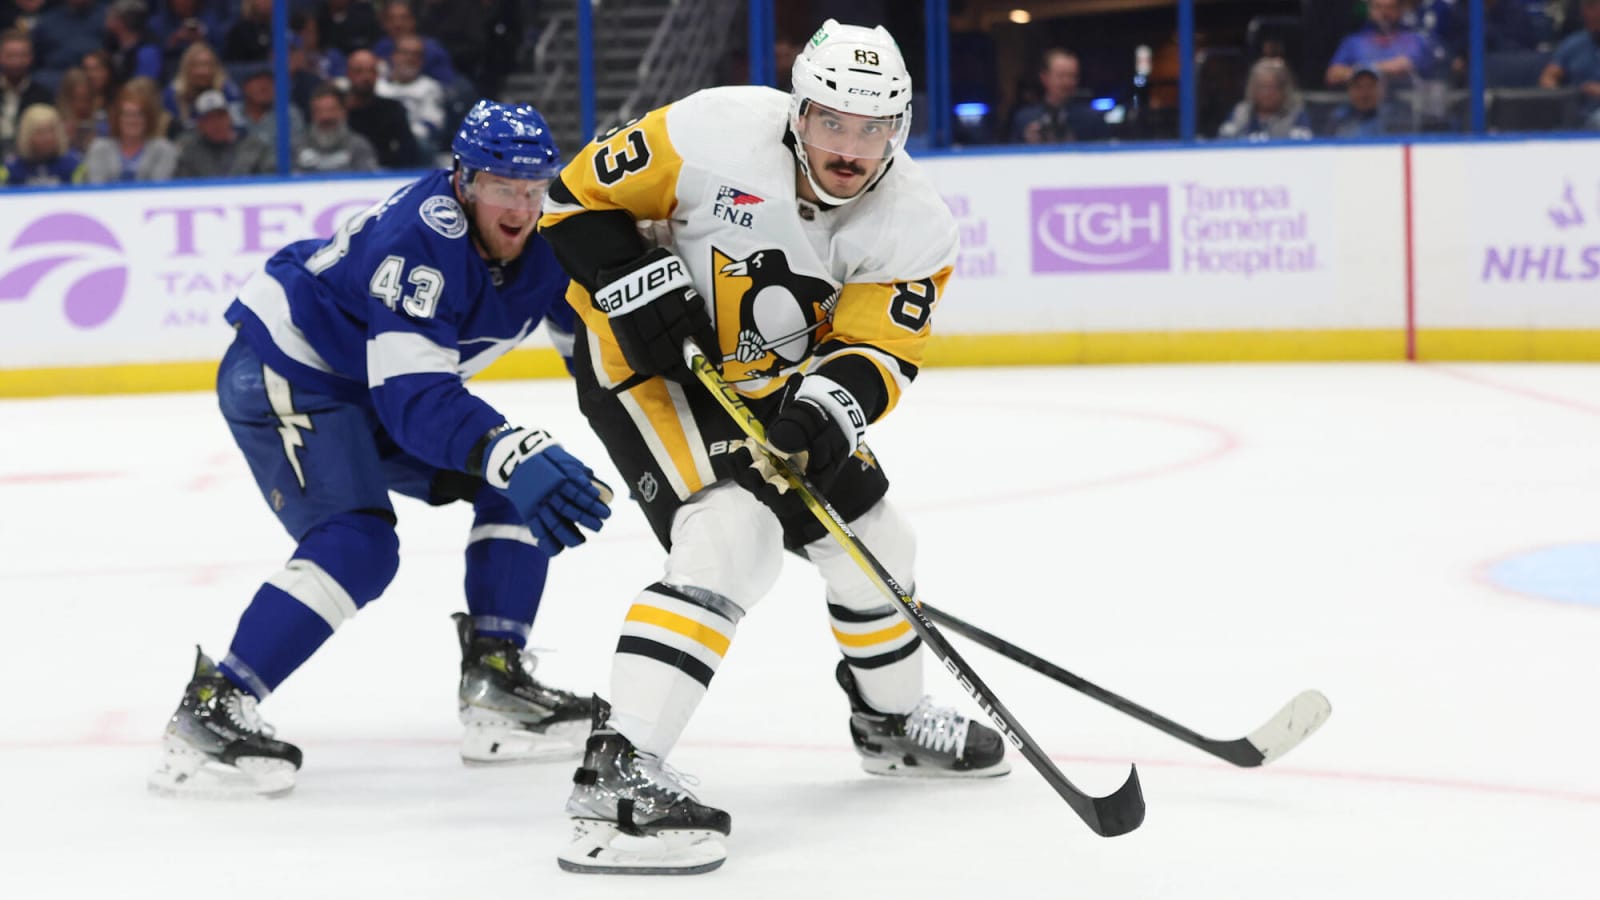 Penguins’ Matt Nieto out 6-8 weeks following knee surgery